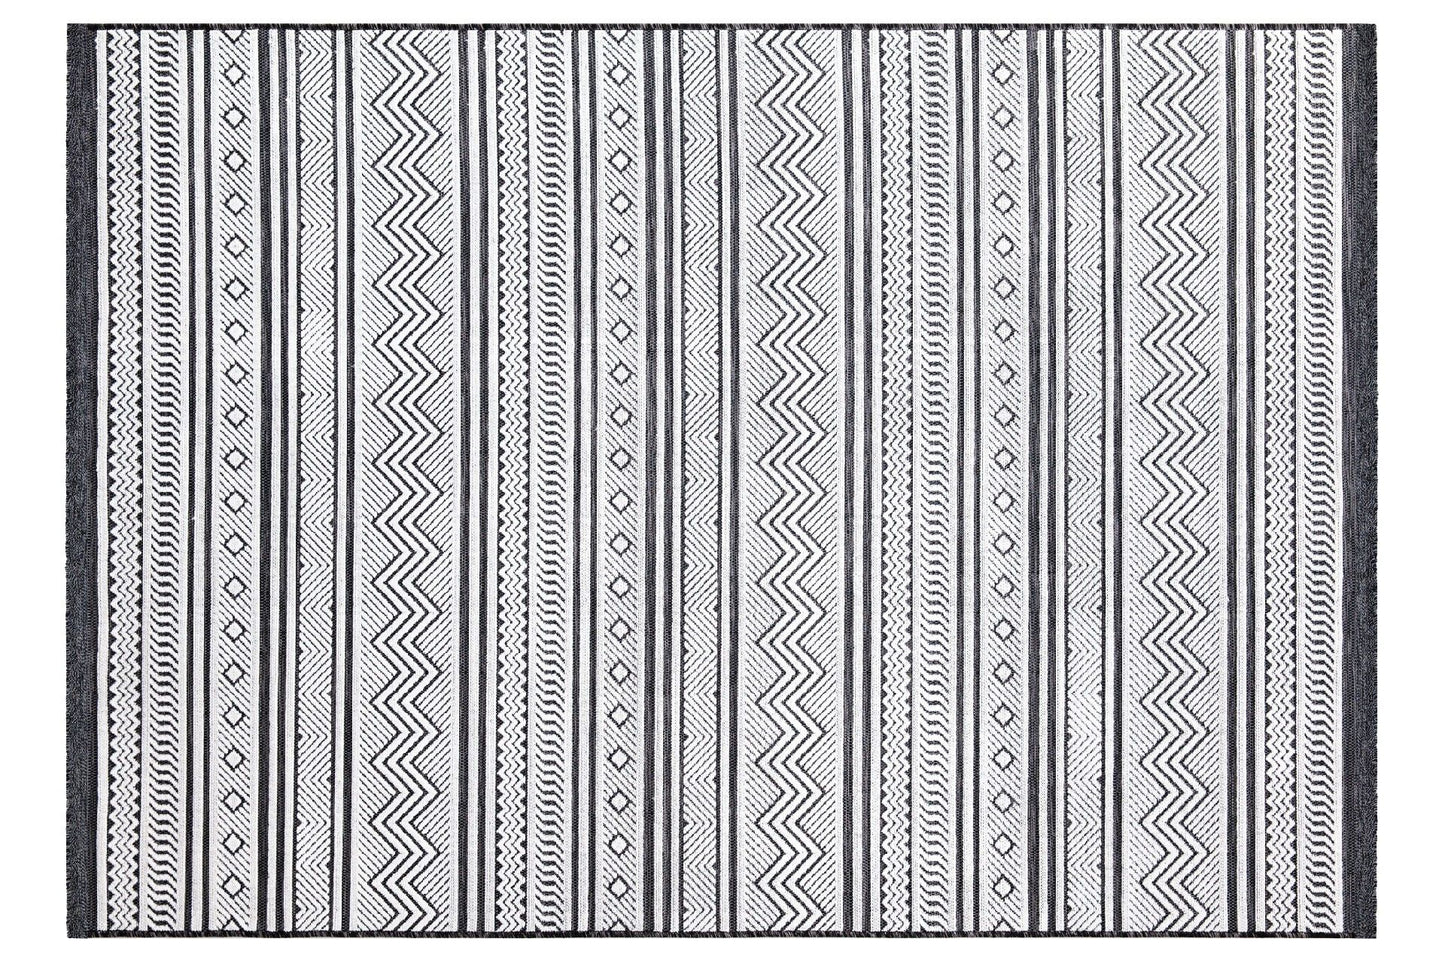 65294 Meridyen - Sort, Hvid - Tæppe (78 x 150)